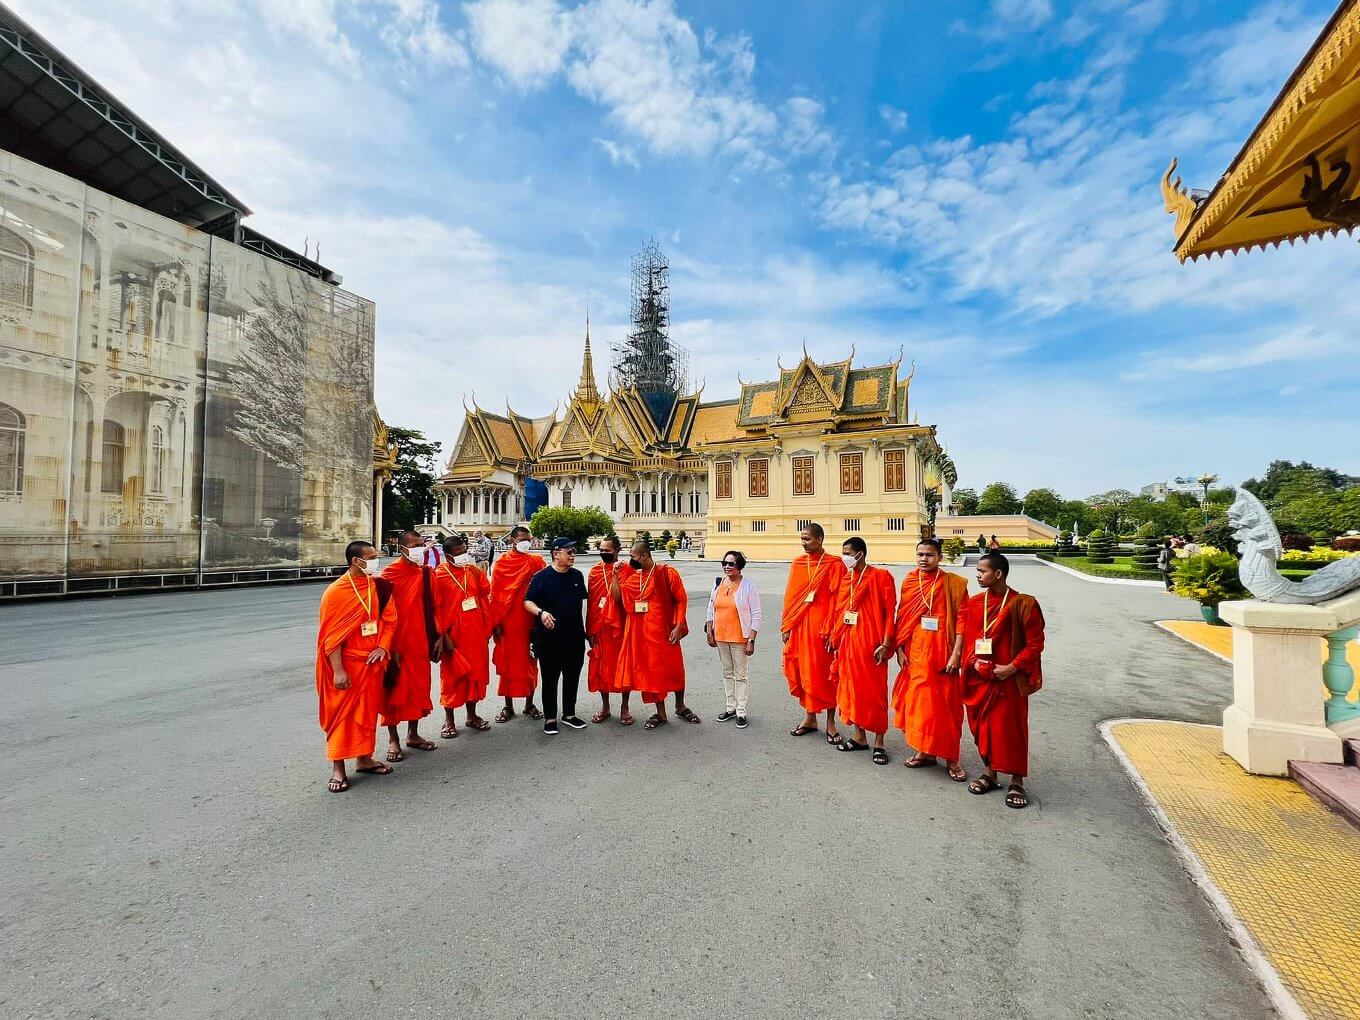 Cambodia-Itinerary-13-Days-Angkor-Wat-Siem-Reap-Royal-Palace-Phnom-Penh-1.jpeg